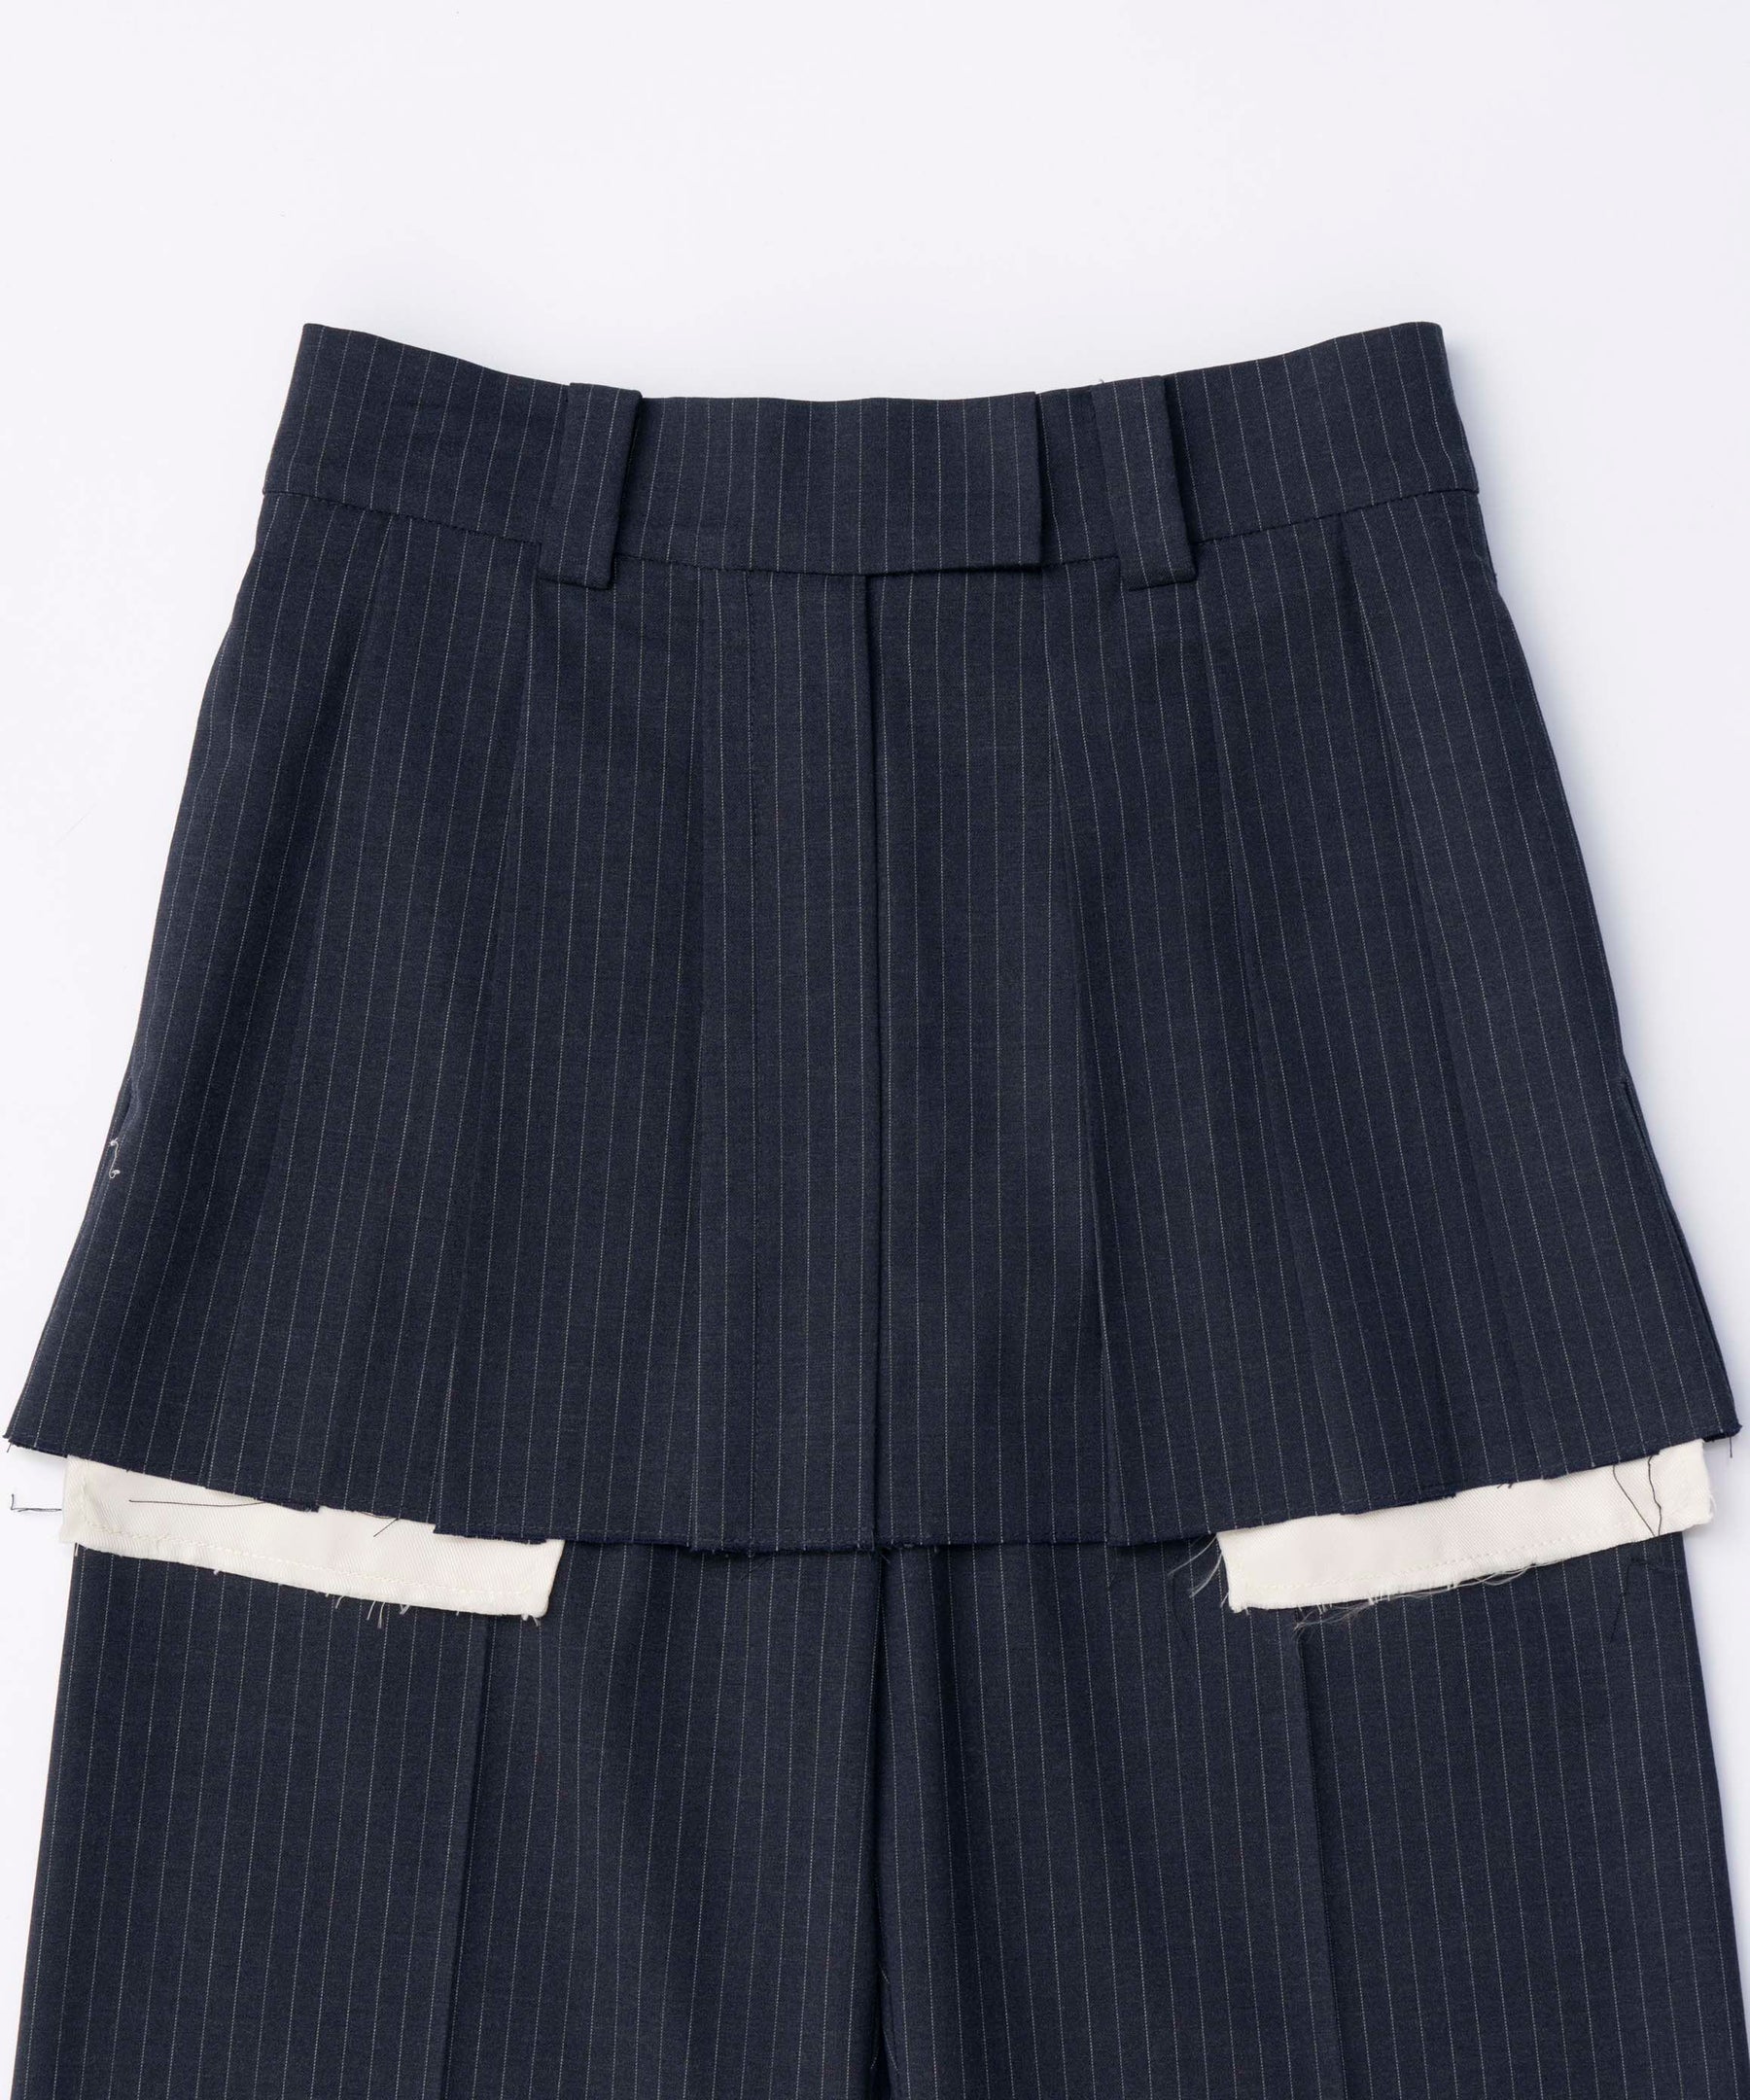 Box Pleated Skirt Pants